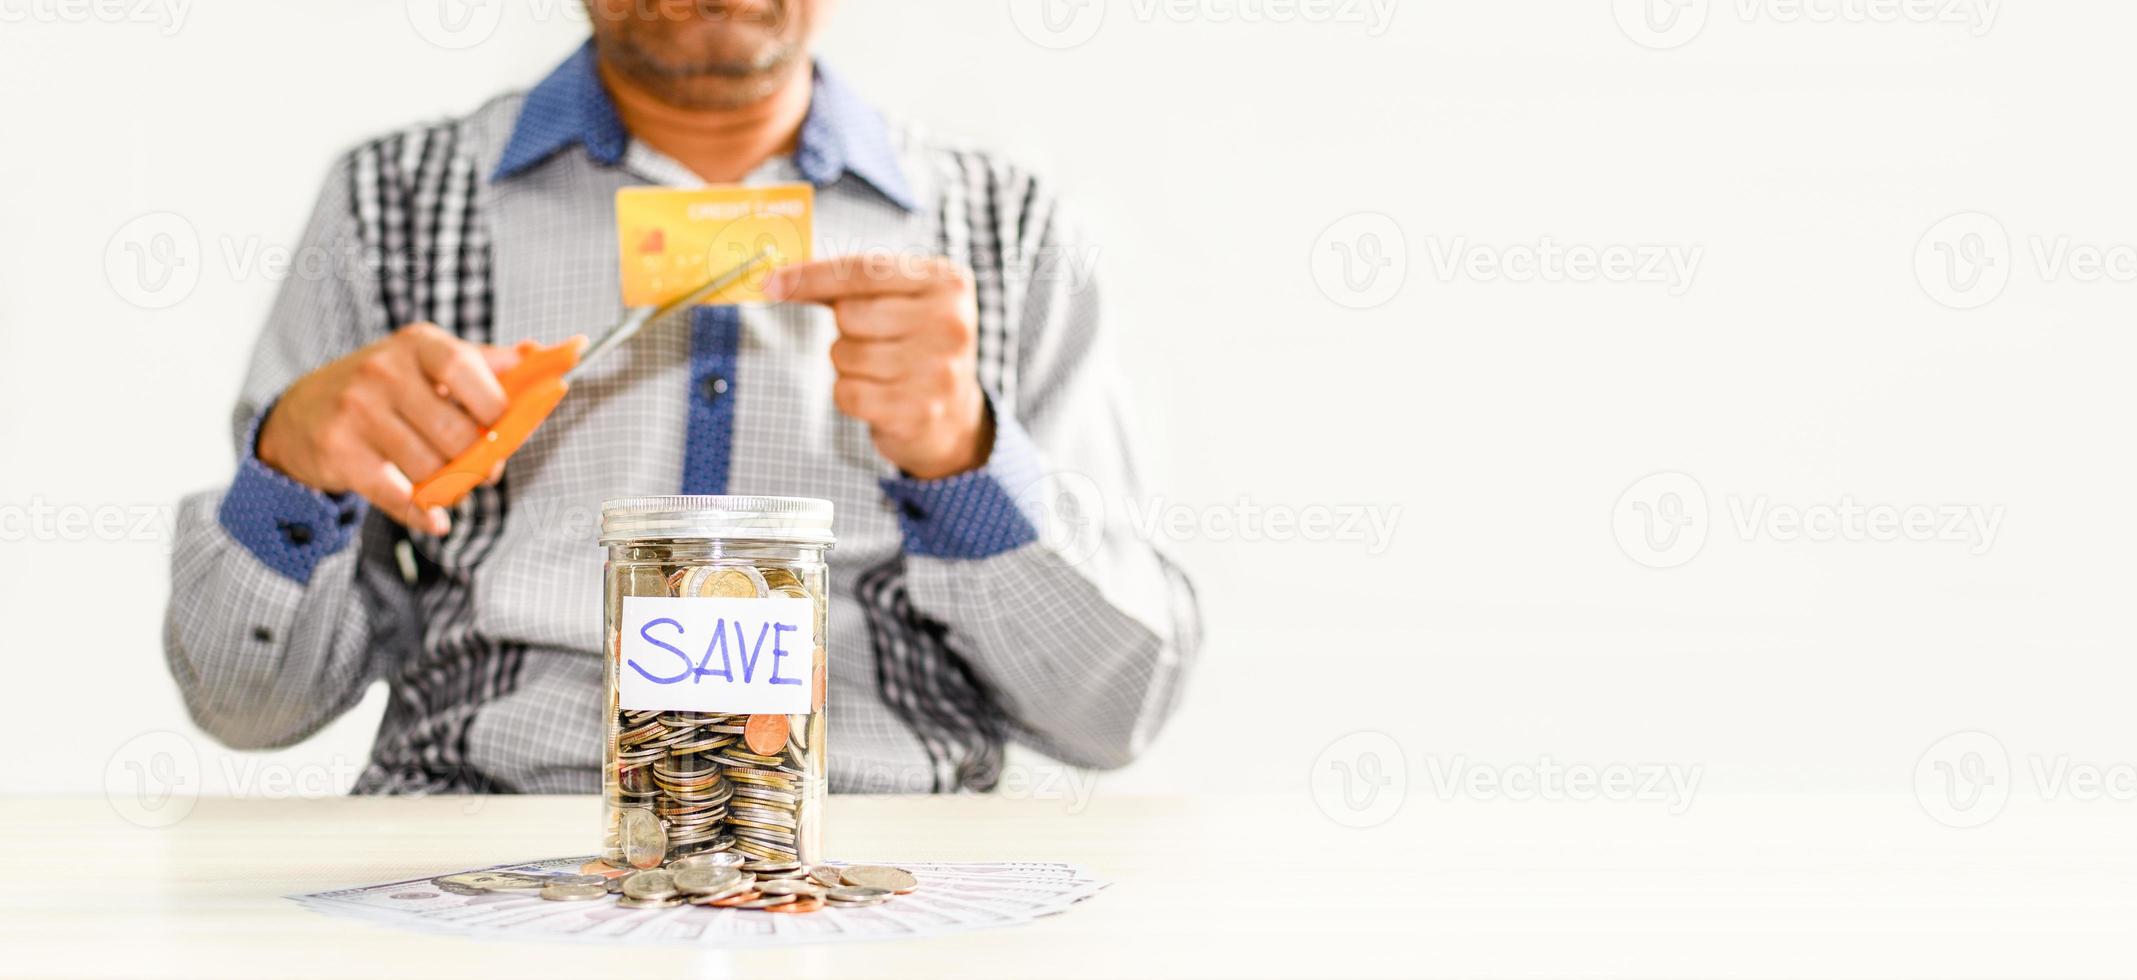 monedas y texto guardados en un frasco de vidrio colocado sobre una mesa de madera. concepto de ahorrar dinero para invertir en el futuro y no superfluo, negocios, banca, finanzas, tarjeta de crédito, fondo borroso foto